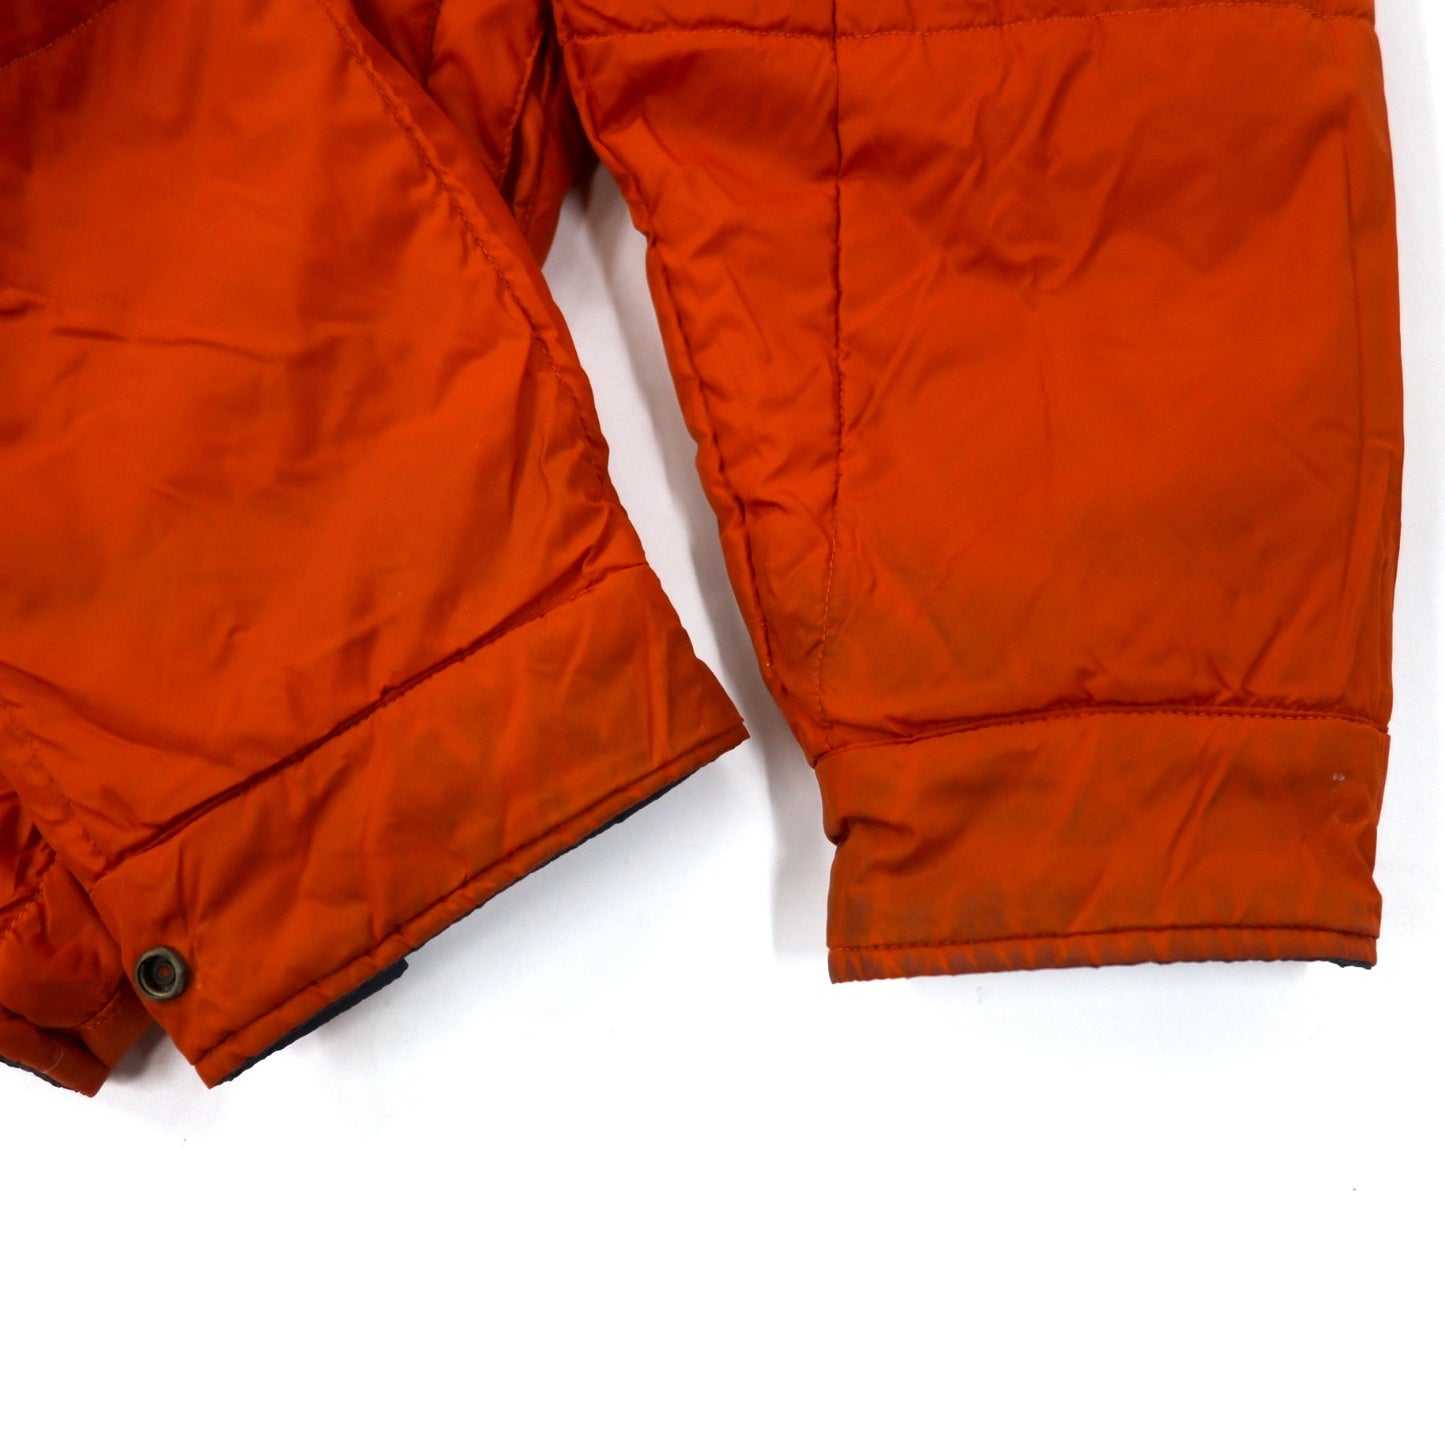 NAUTICA リバーシブル インサレーション キルティングジャケット 中綿 L グレー オレンジ ナイロン THERMOLITE ACTIVE